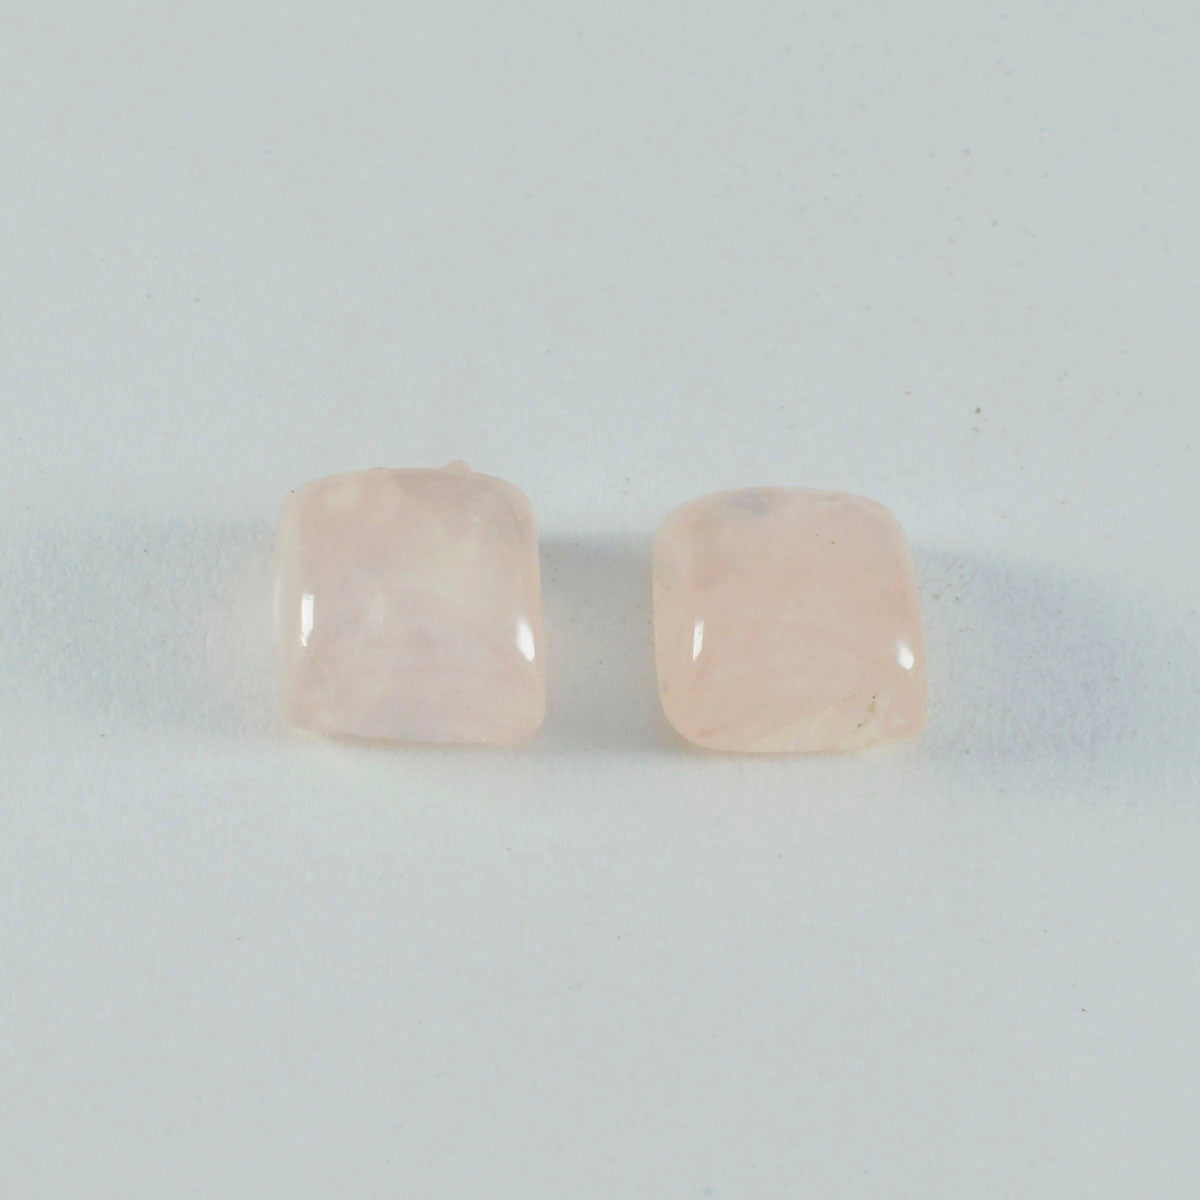 Riyogems, 1 pieza, cabujón de cuarzo rosa, 12x12mm, forma cuadrada, piedra preciosa suelta de calidad dulce